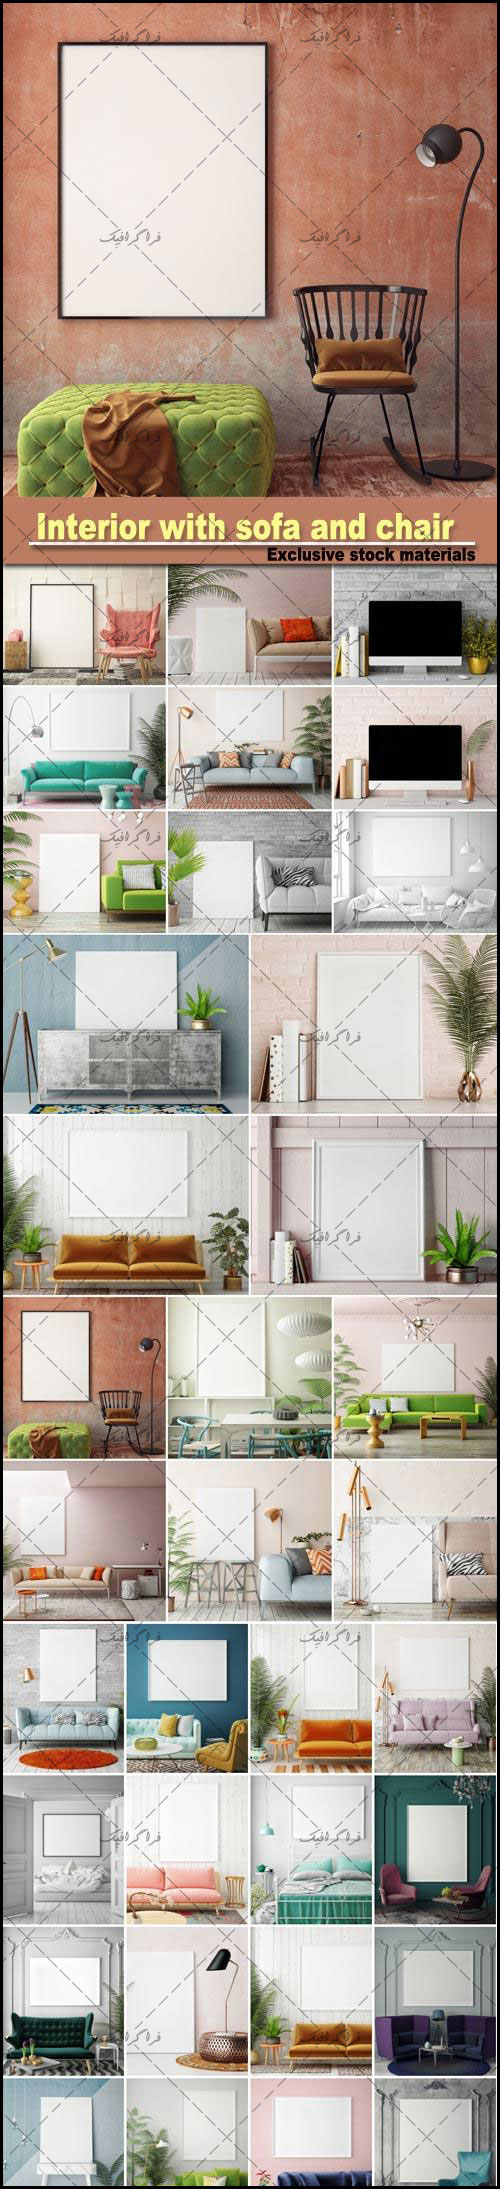 دانلود تصاویر استوک نمای داخلی خانه با صندلی و قاب خالی